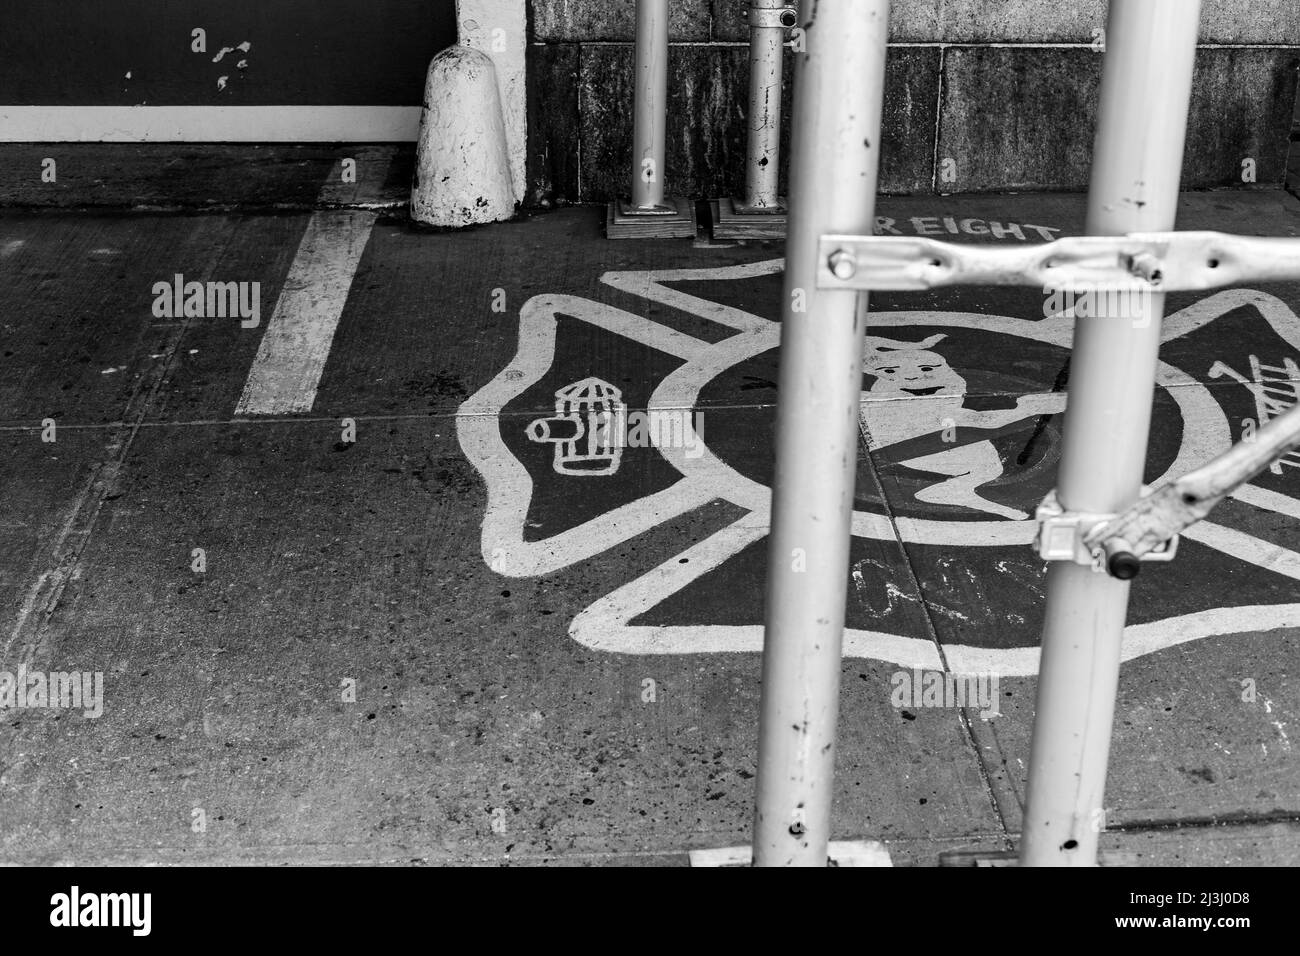 14 NORTH MOORE ST, New York City, NY, Estados Unidos, The Hook & Ladder 8 Firehouse. La casa de fuego se hizo famosa en la película Ghostbusters. Ubicado en Tribeca, Bajo Manhattan. Foto de stock